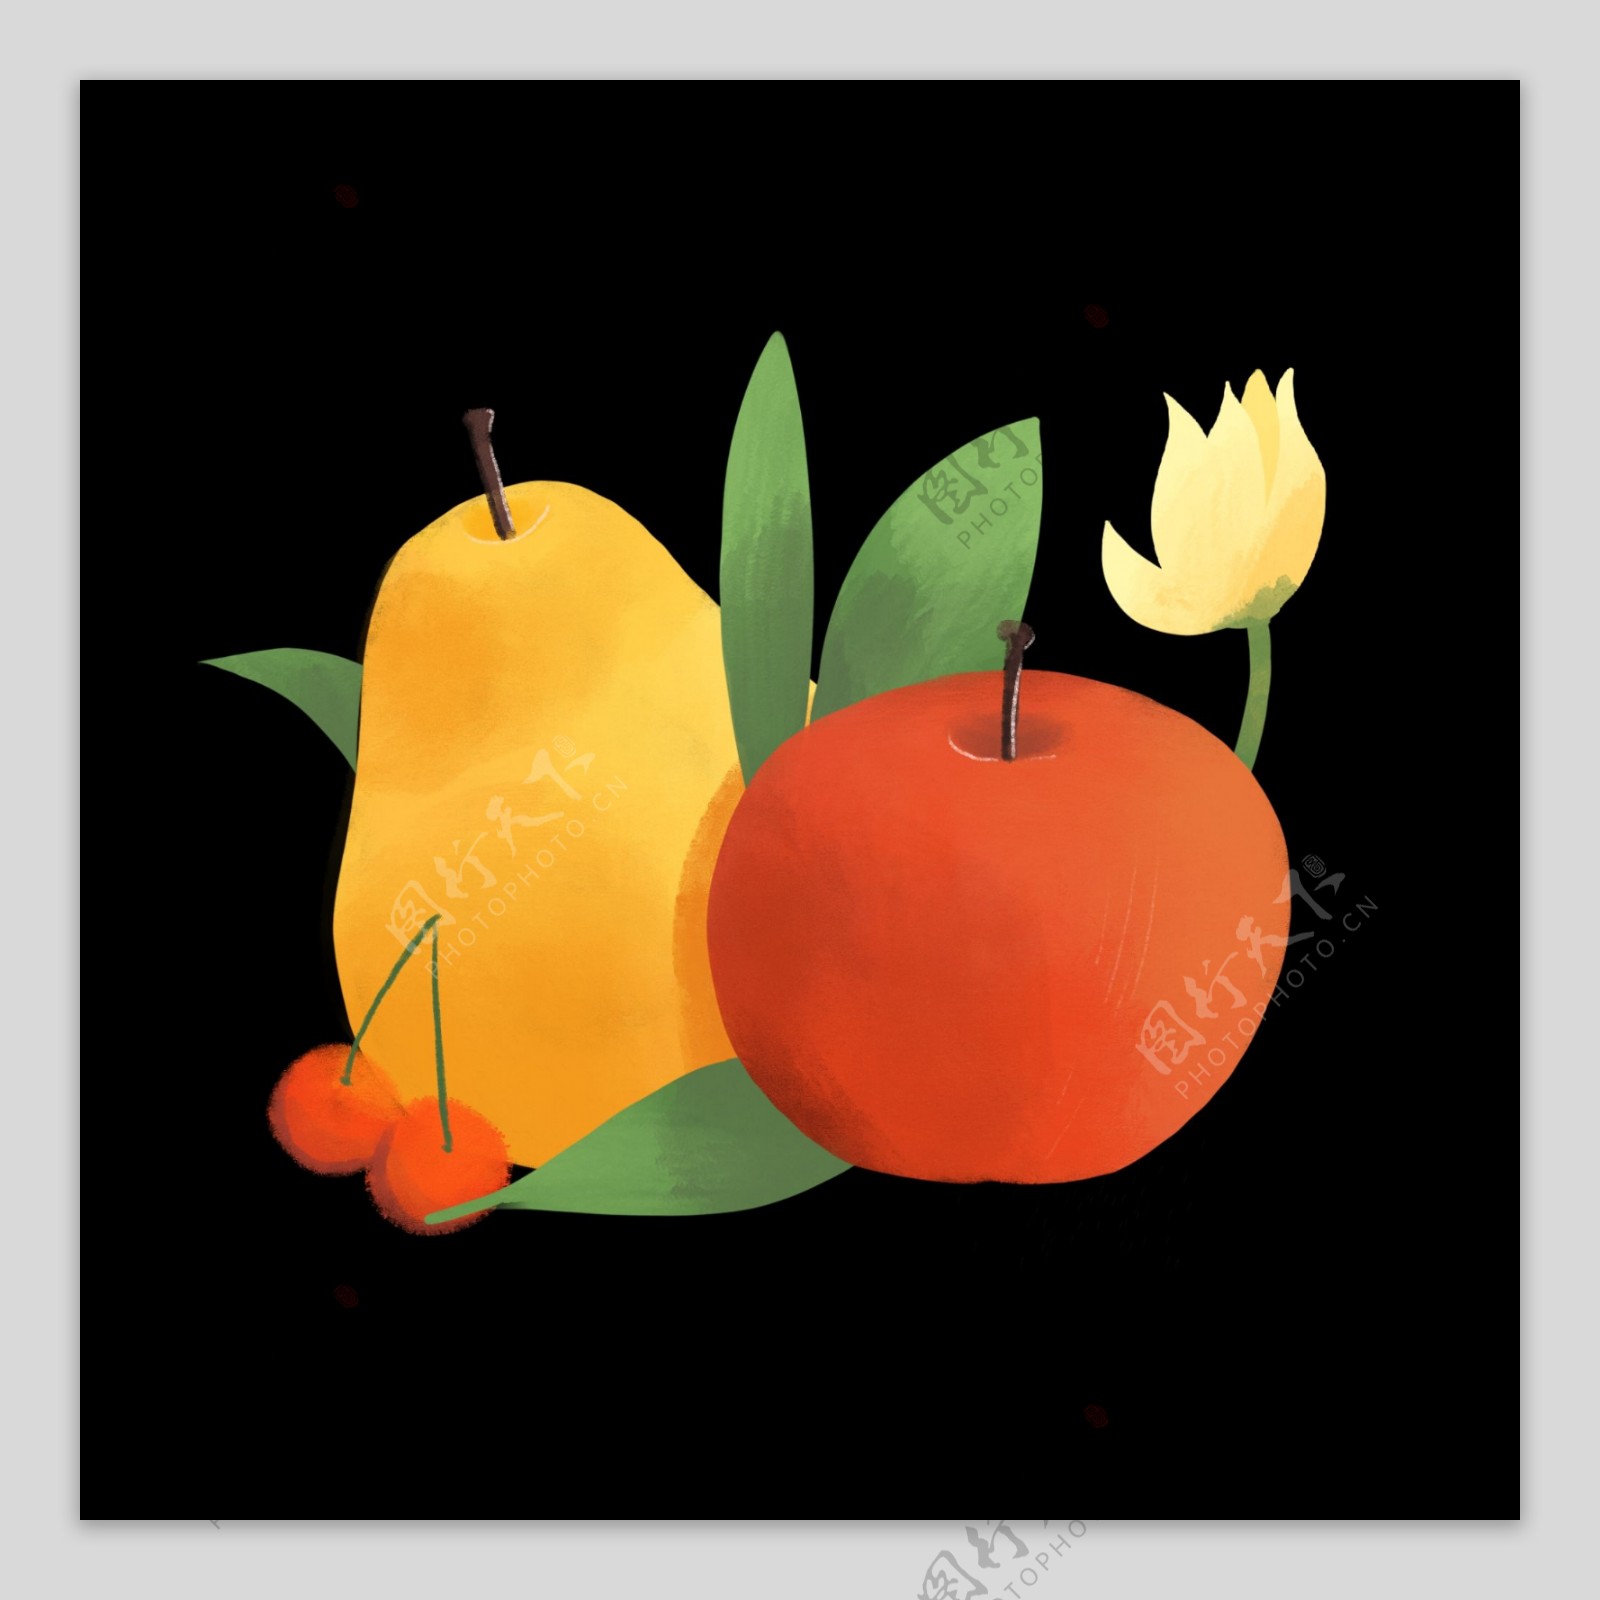 甜蜜水果鲜果红黄甜美PNG苹果梨子樱桃